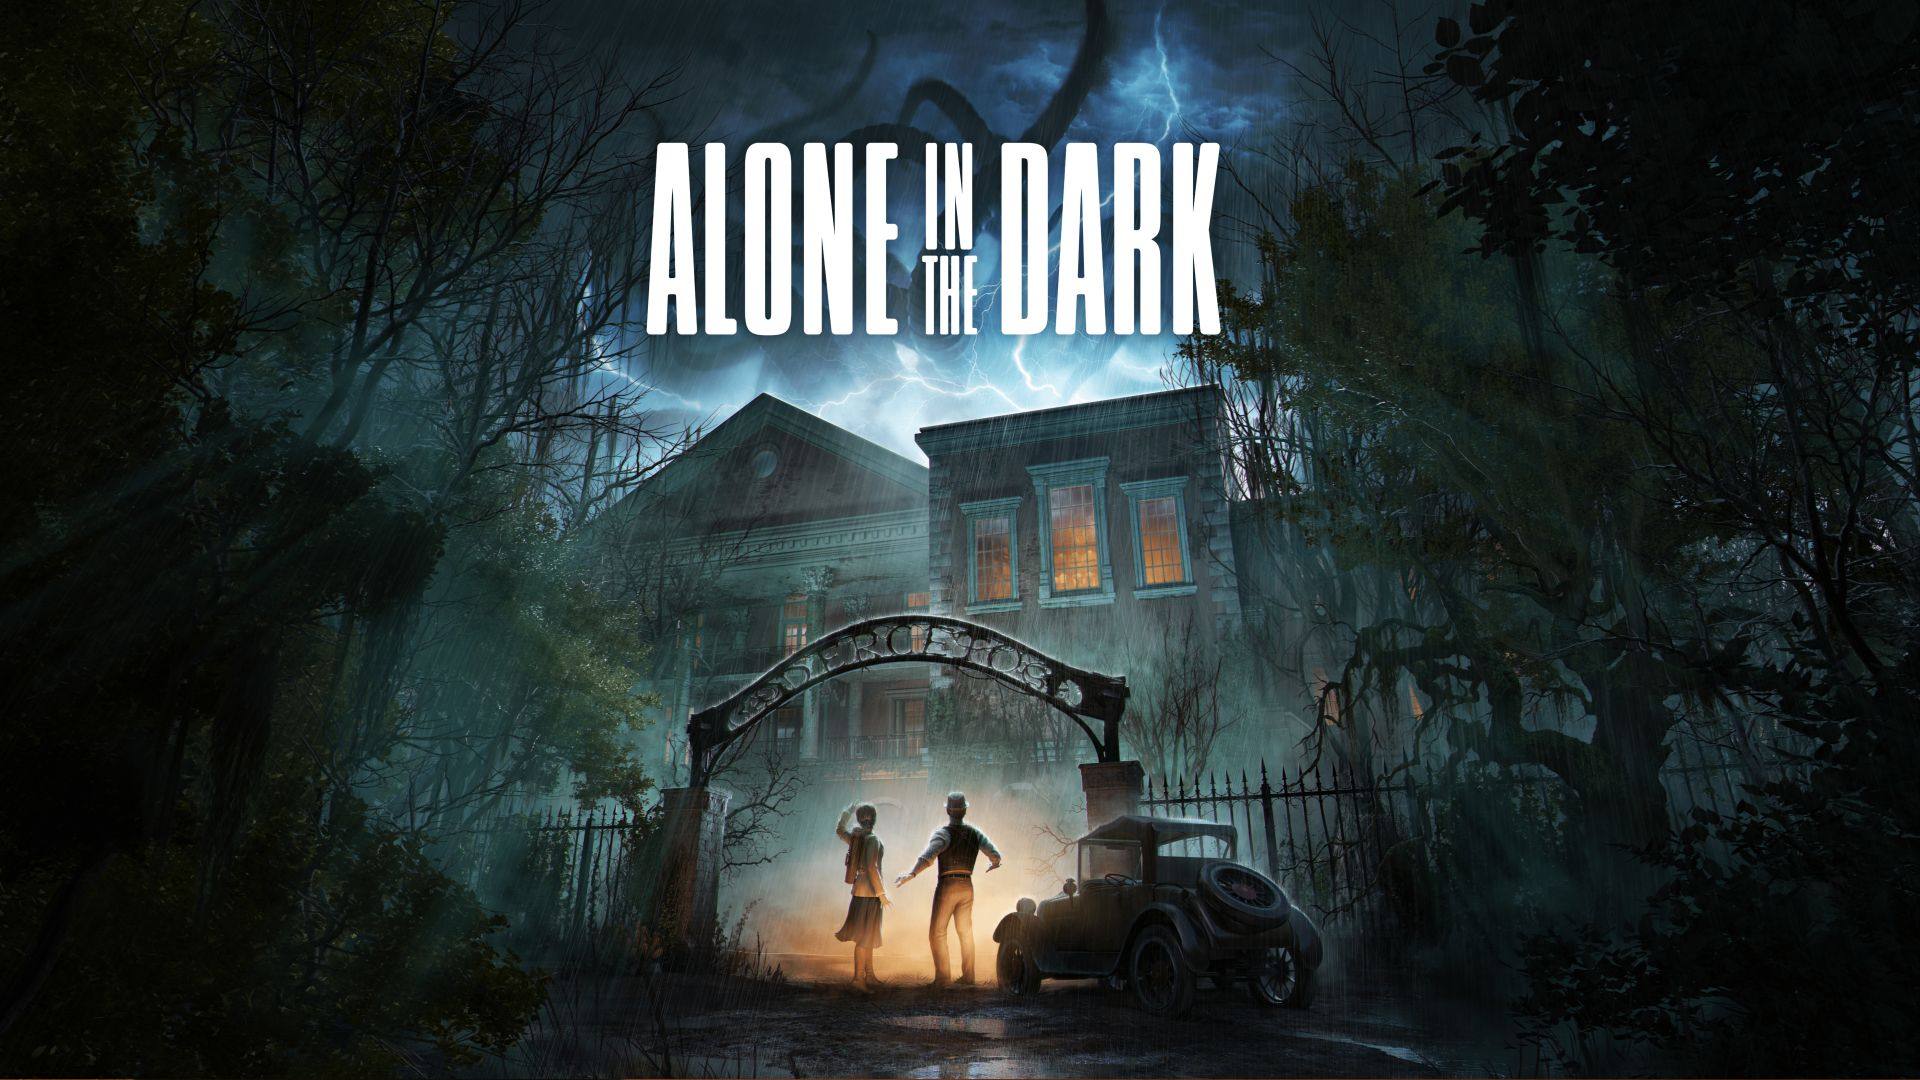 بازی Alone in the Dark معرفی شد